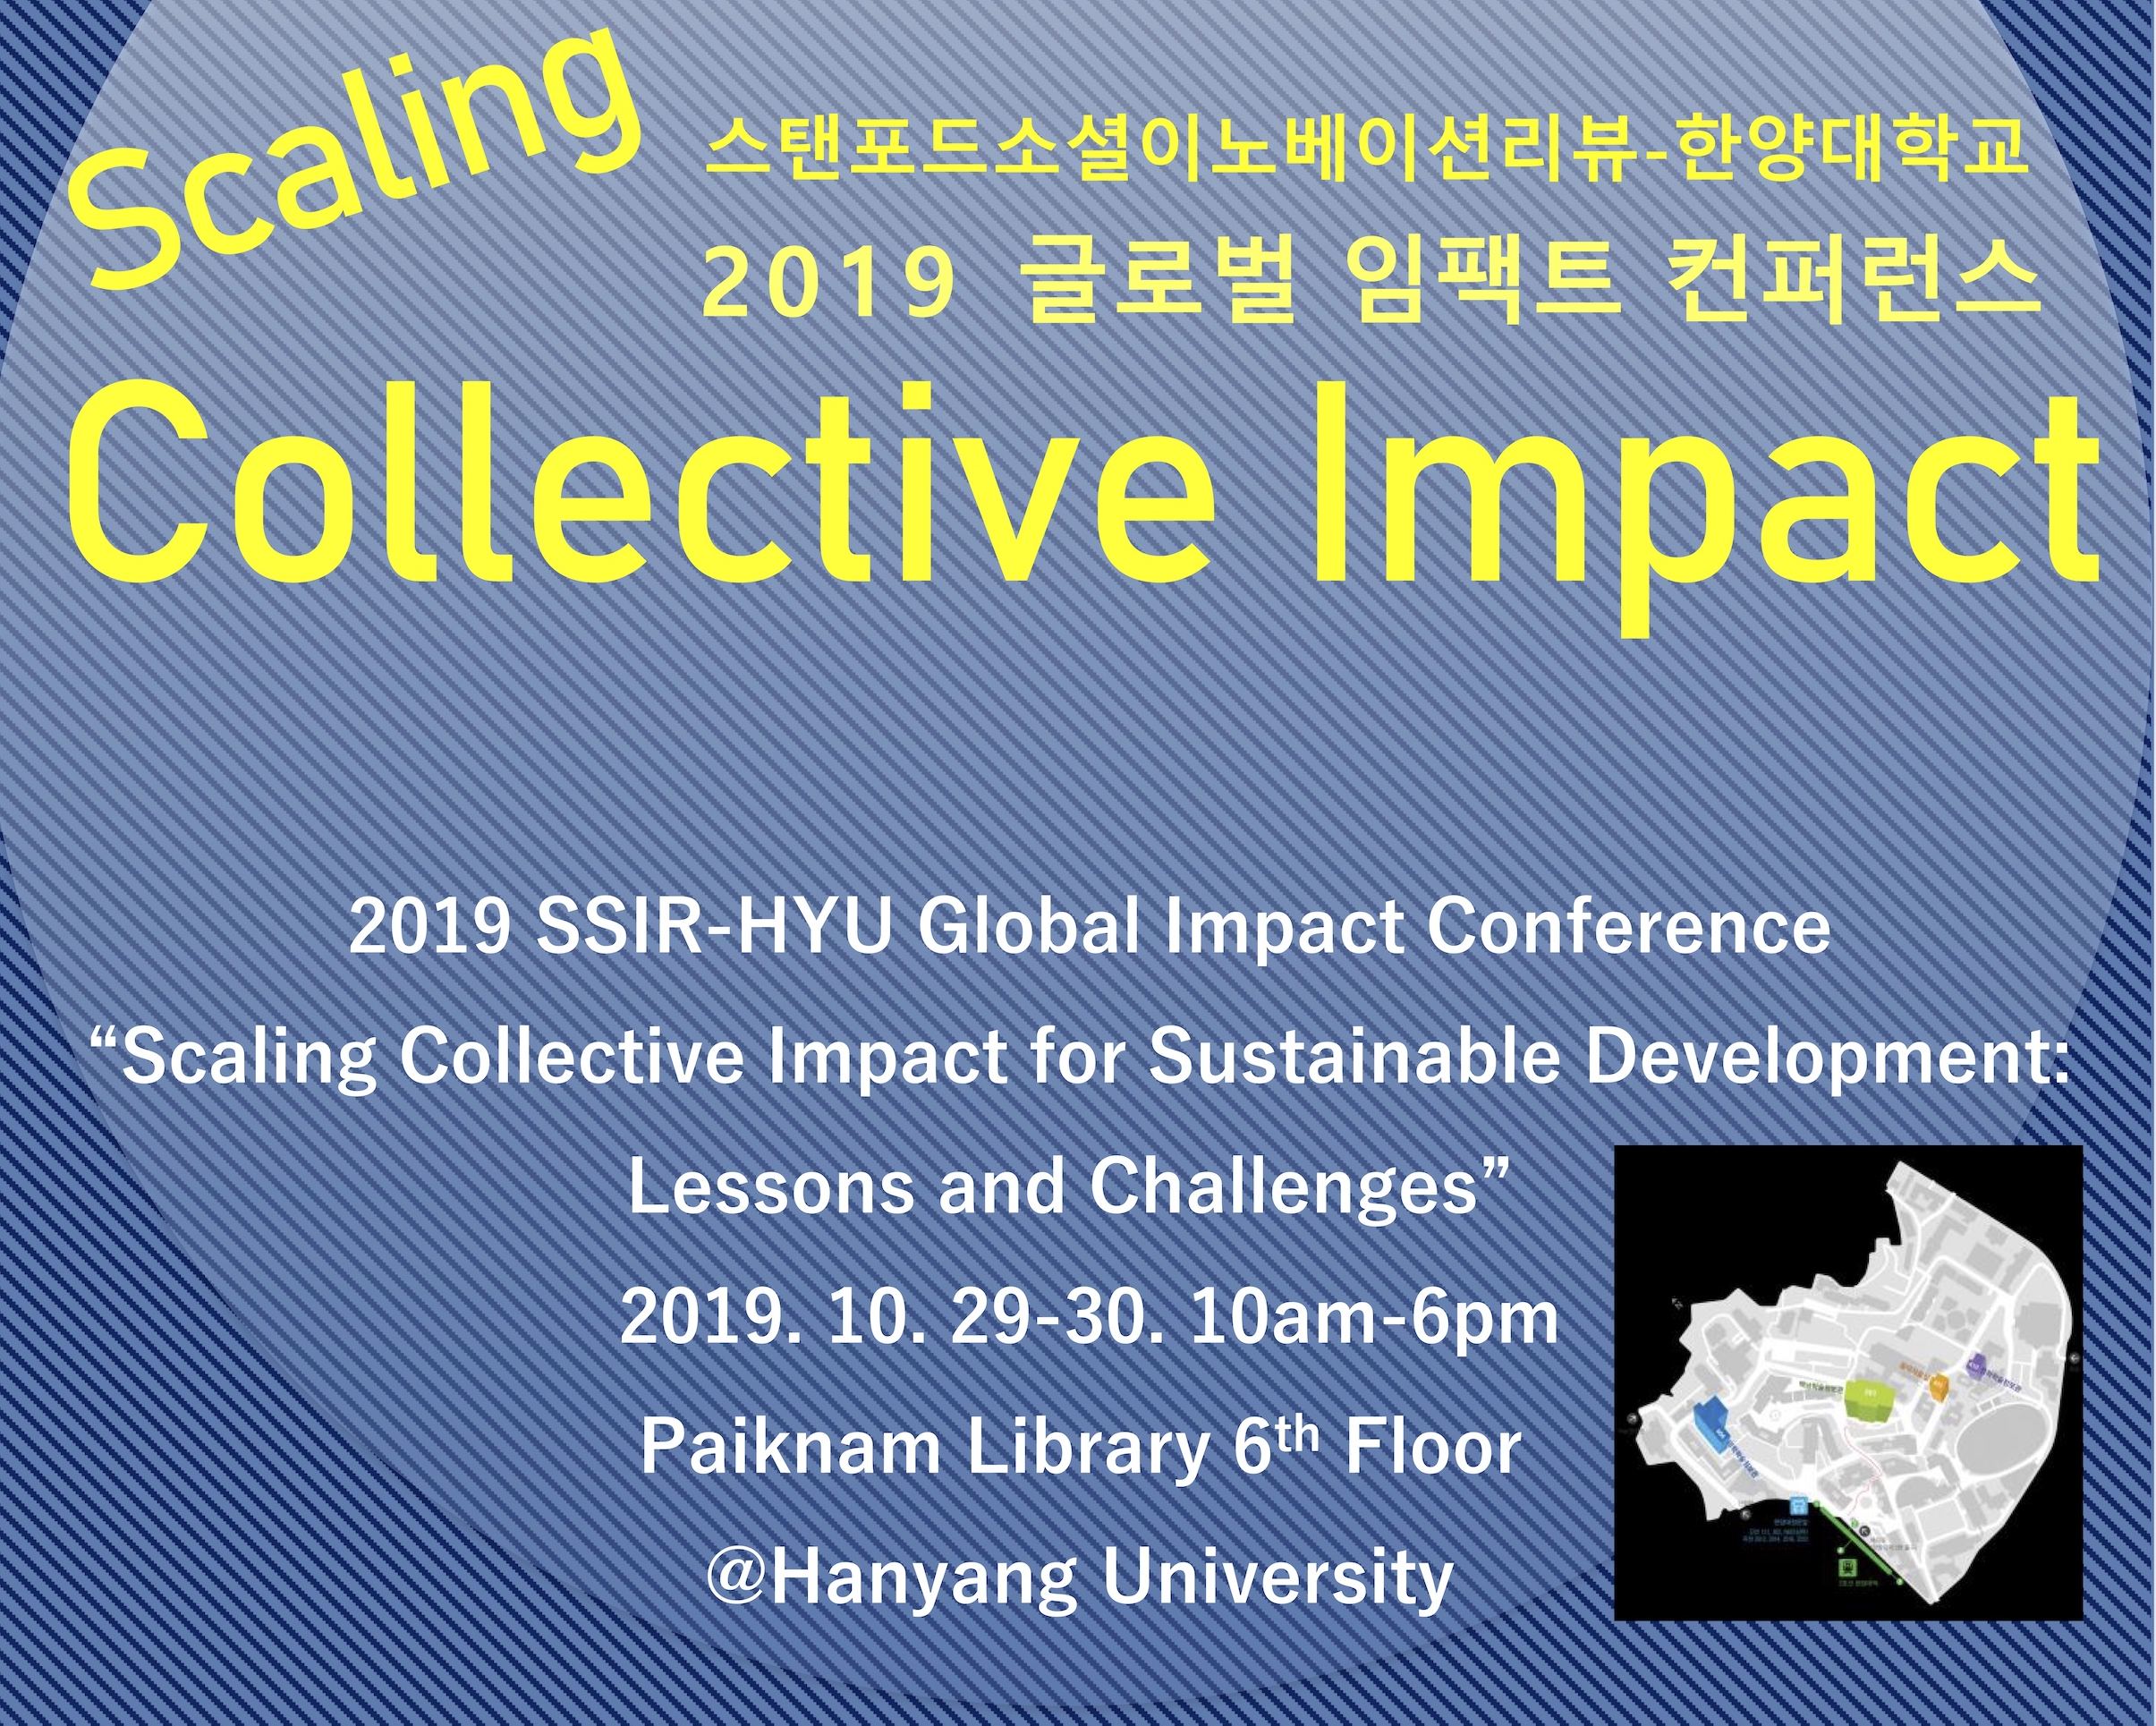 [2019 스탠퍼드사회혁신리뷰(SSIR)-한양대(HYU) 글로벌 임팩트 컨퍼런스 개최 안내]